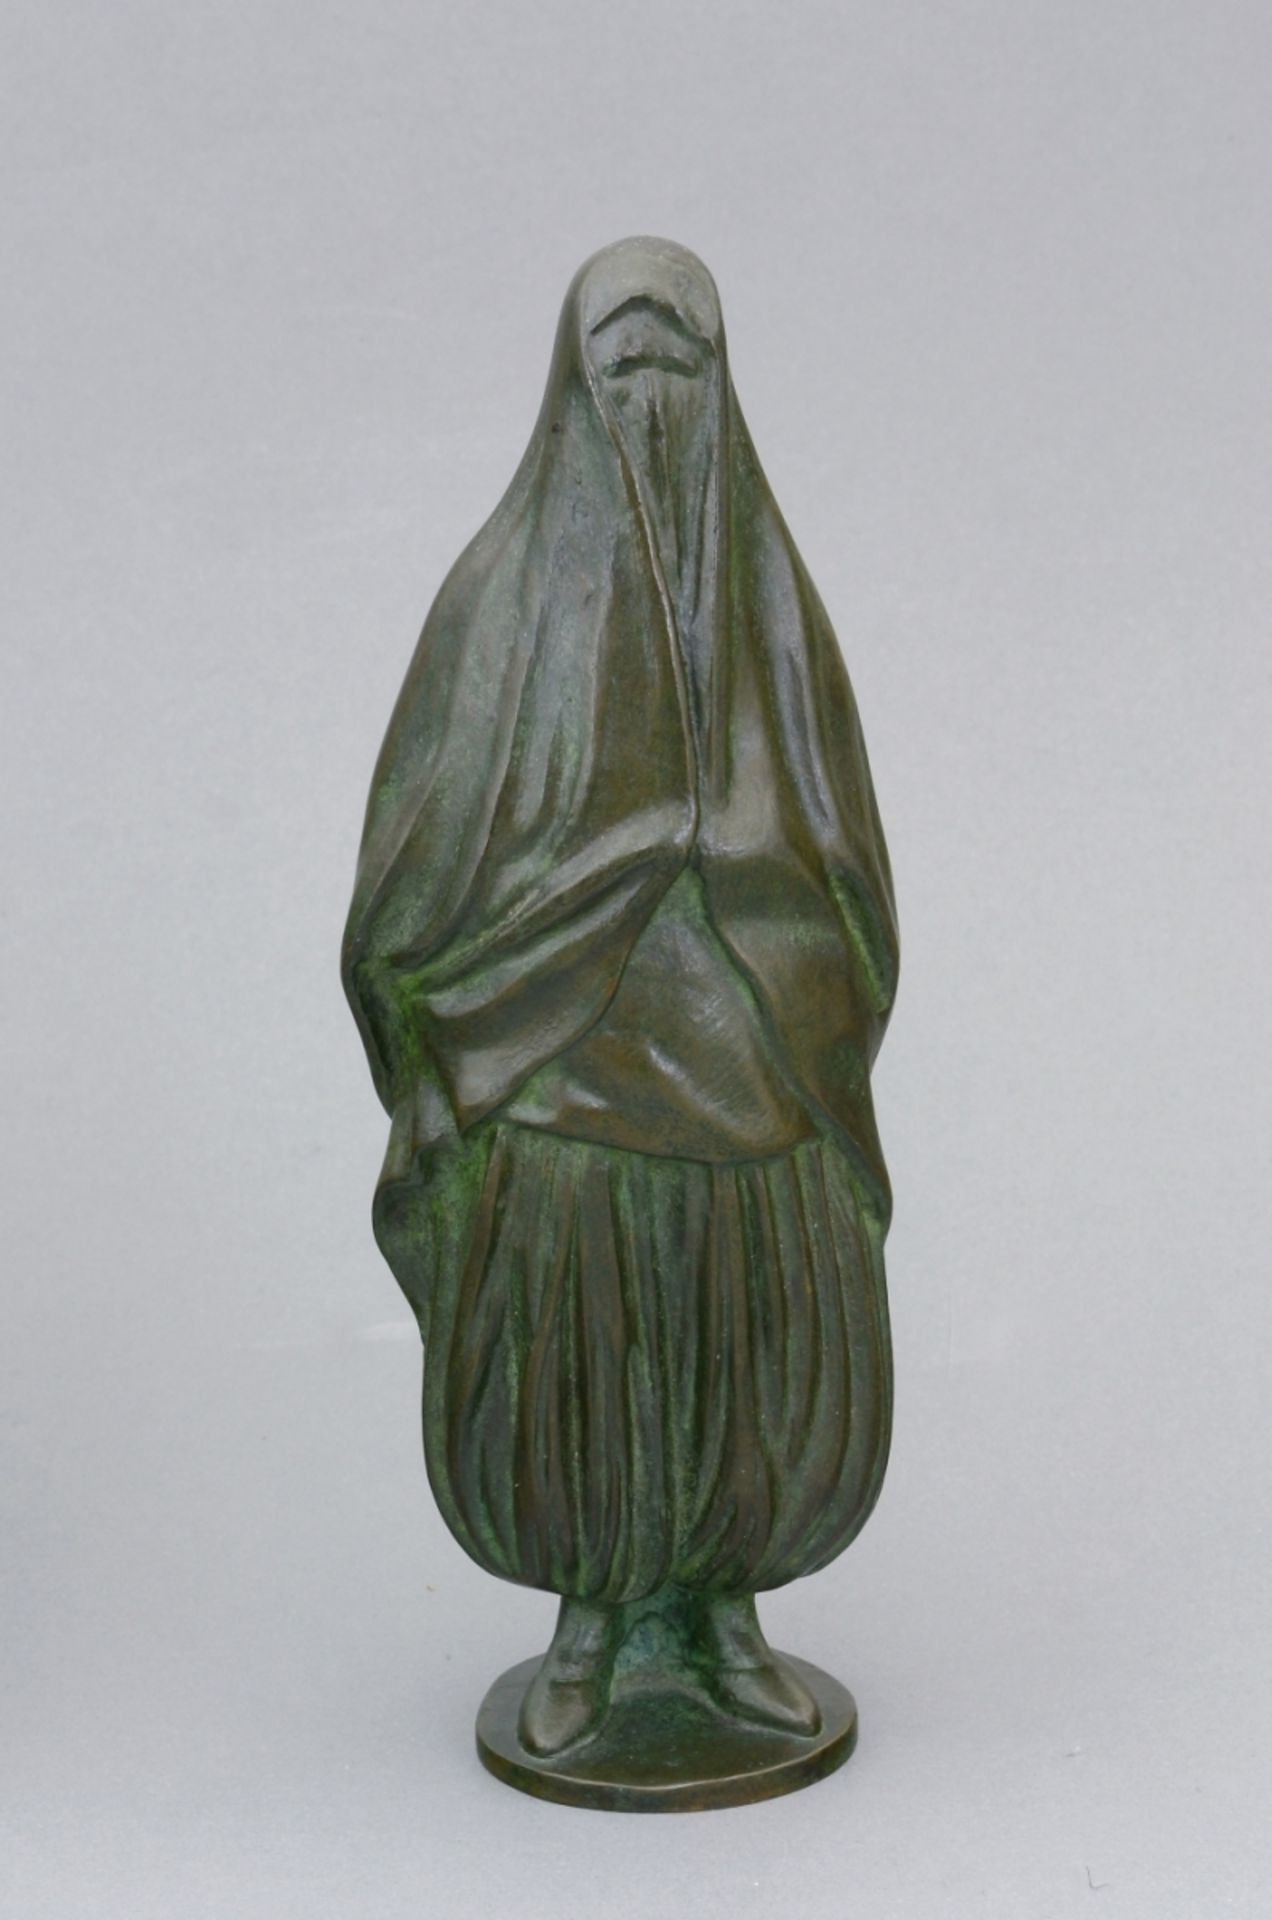 Chauvin, G. (Französischer Bildhauer